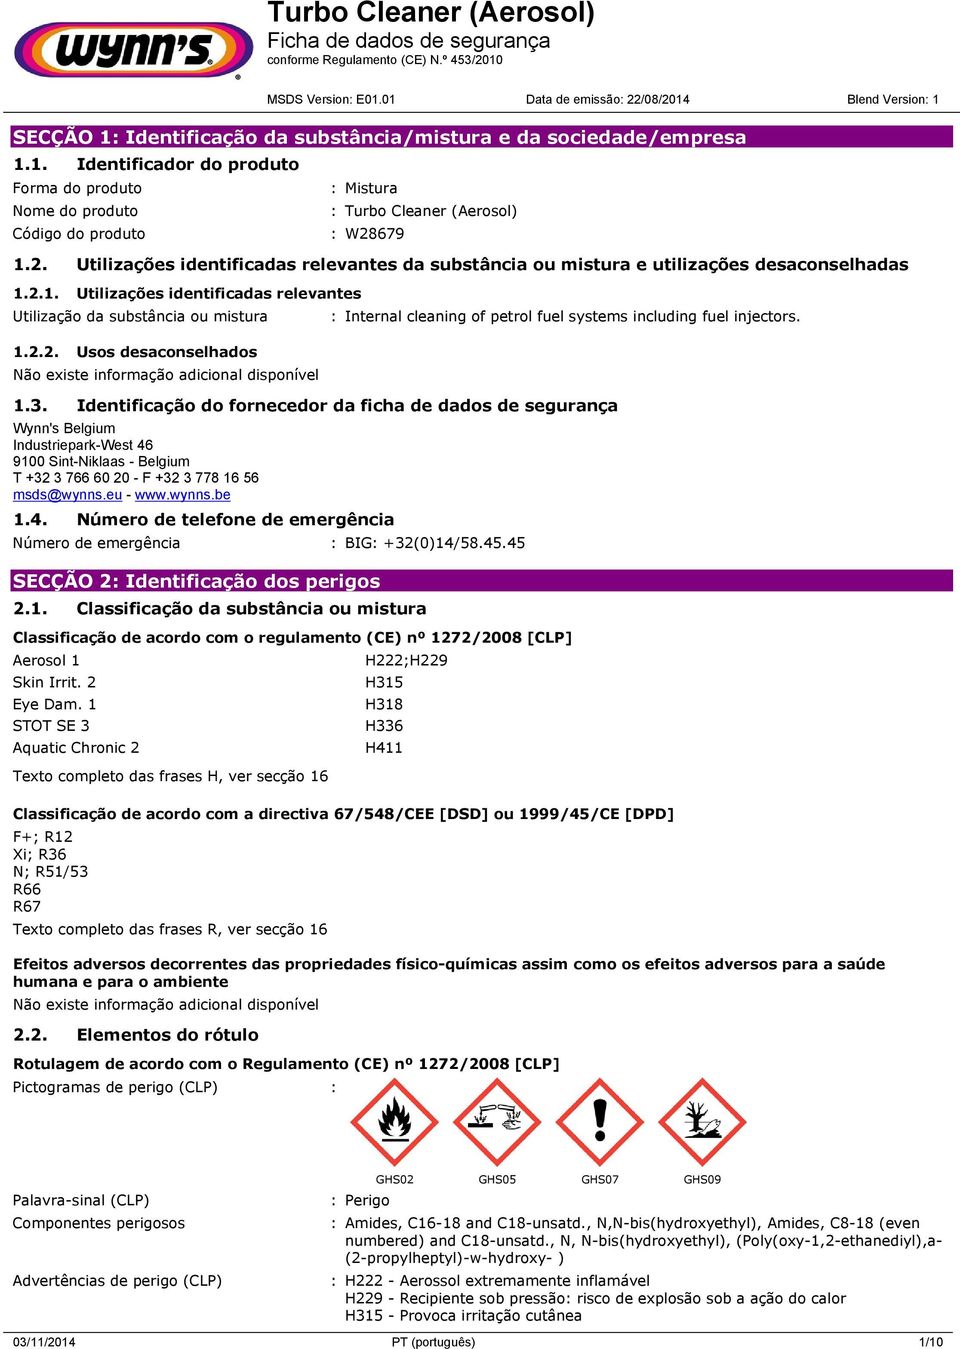 1.3. Identificação do fornecedor da ficha de dados de segurança Wynn's Belgium Industriepark-West 46 9100 Sint-Niklaas - Belgium T +32 3 766 60 20 - F +32 3 778 16 56 msds@wynns.eu - www.wynns.be 1.4. Número de telefone de emergência Número de emergência : BIG: +32(0)14/58.